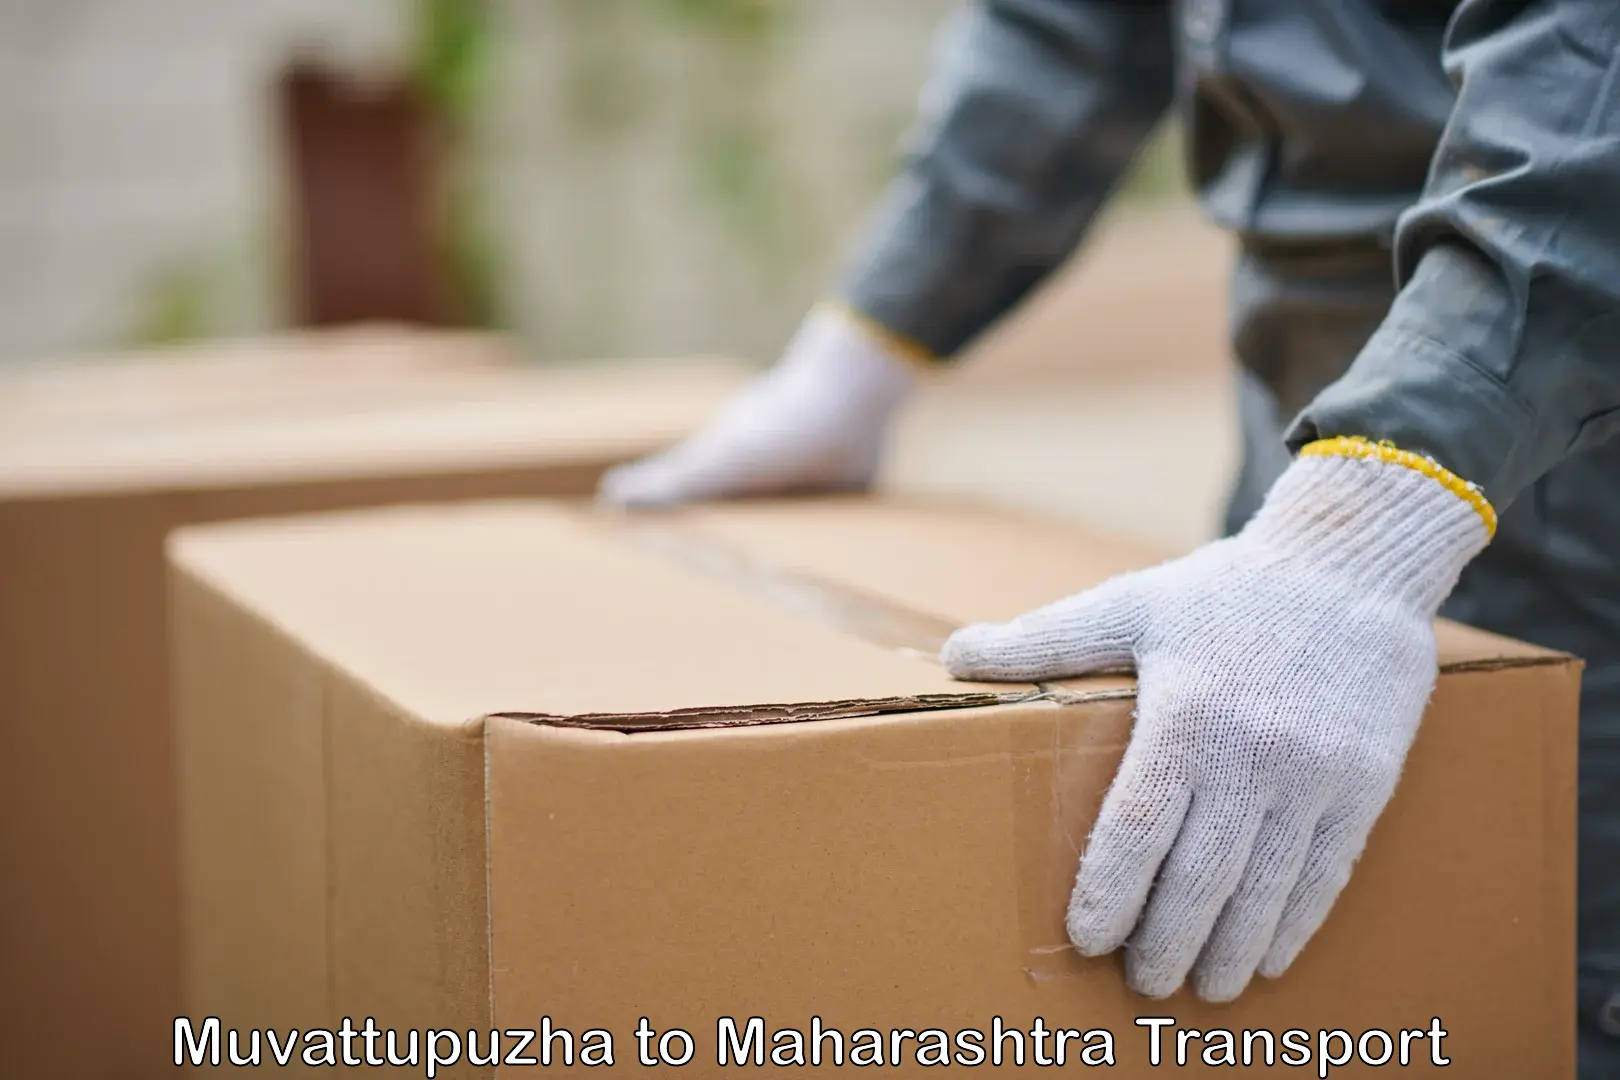 Cargo transportation services Muvattupuzha to Maharashtra